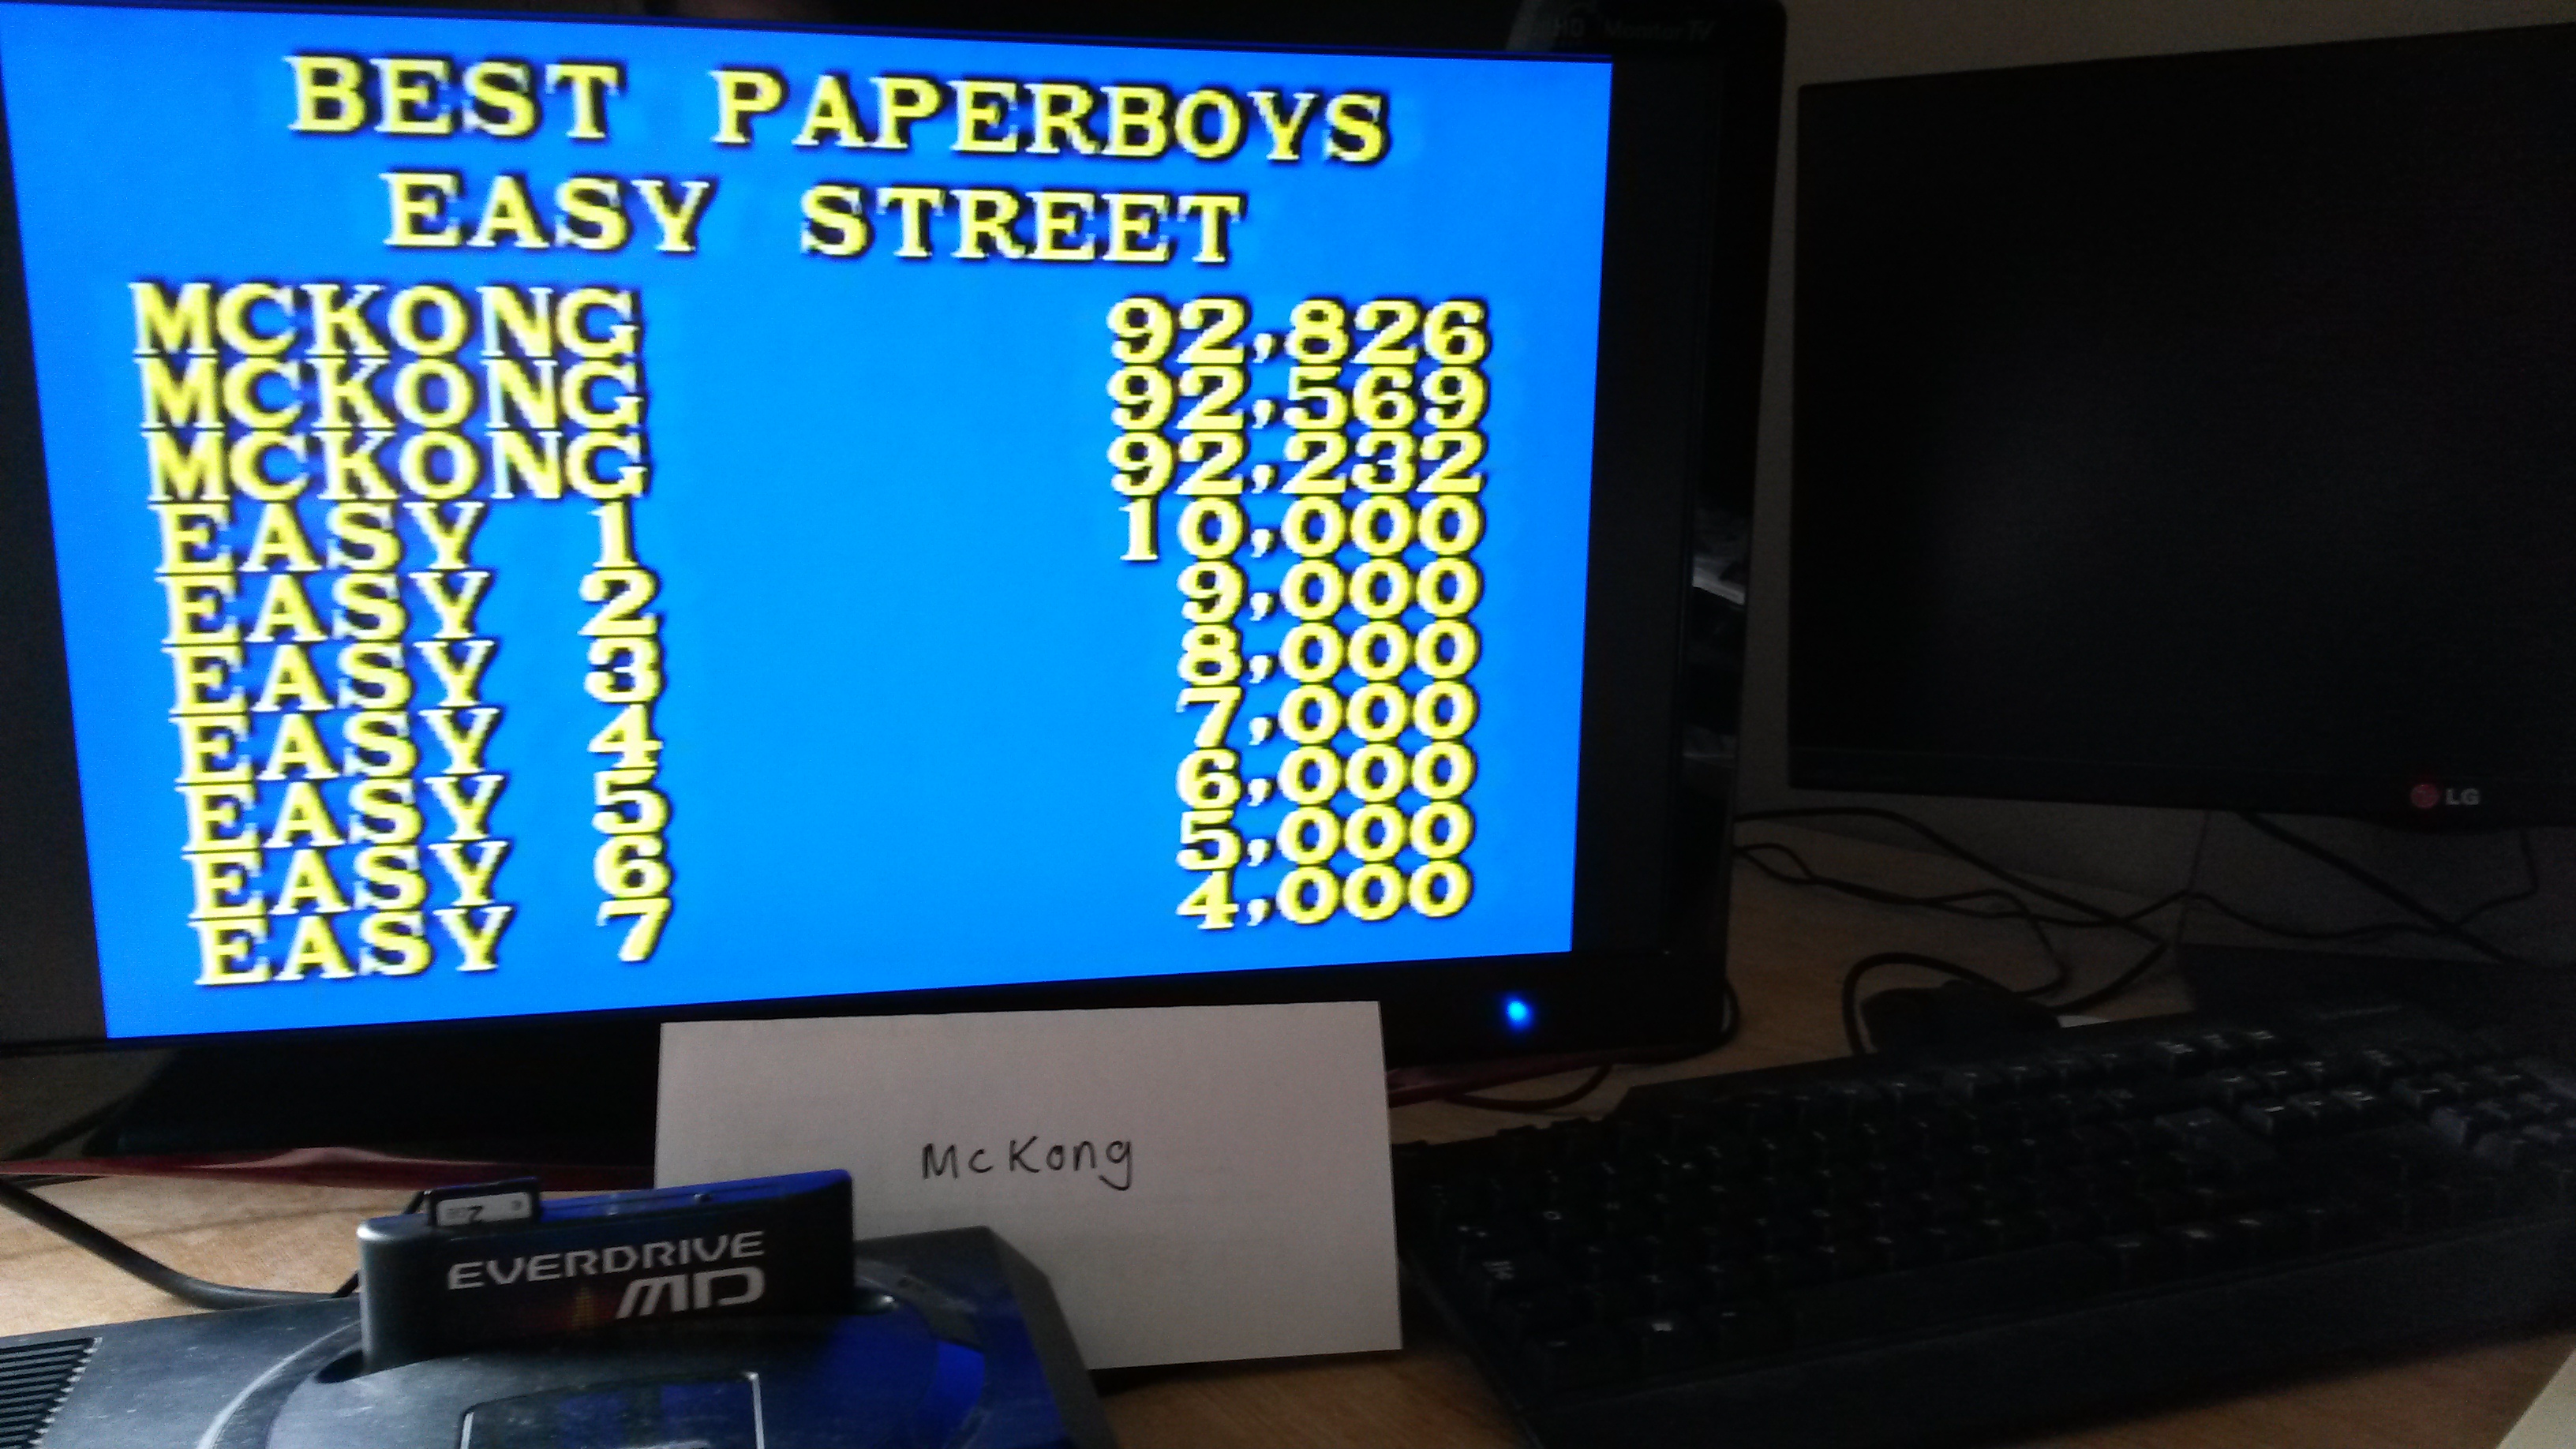 Paper Boy: Easy Street [Hard]